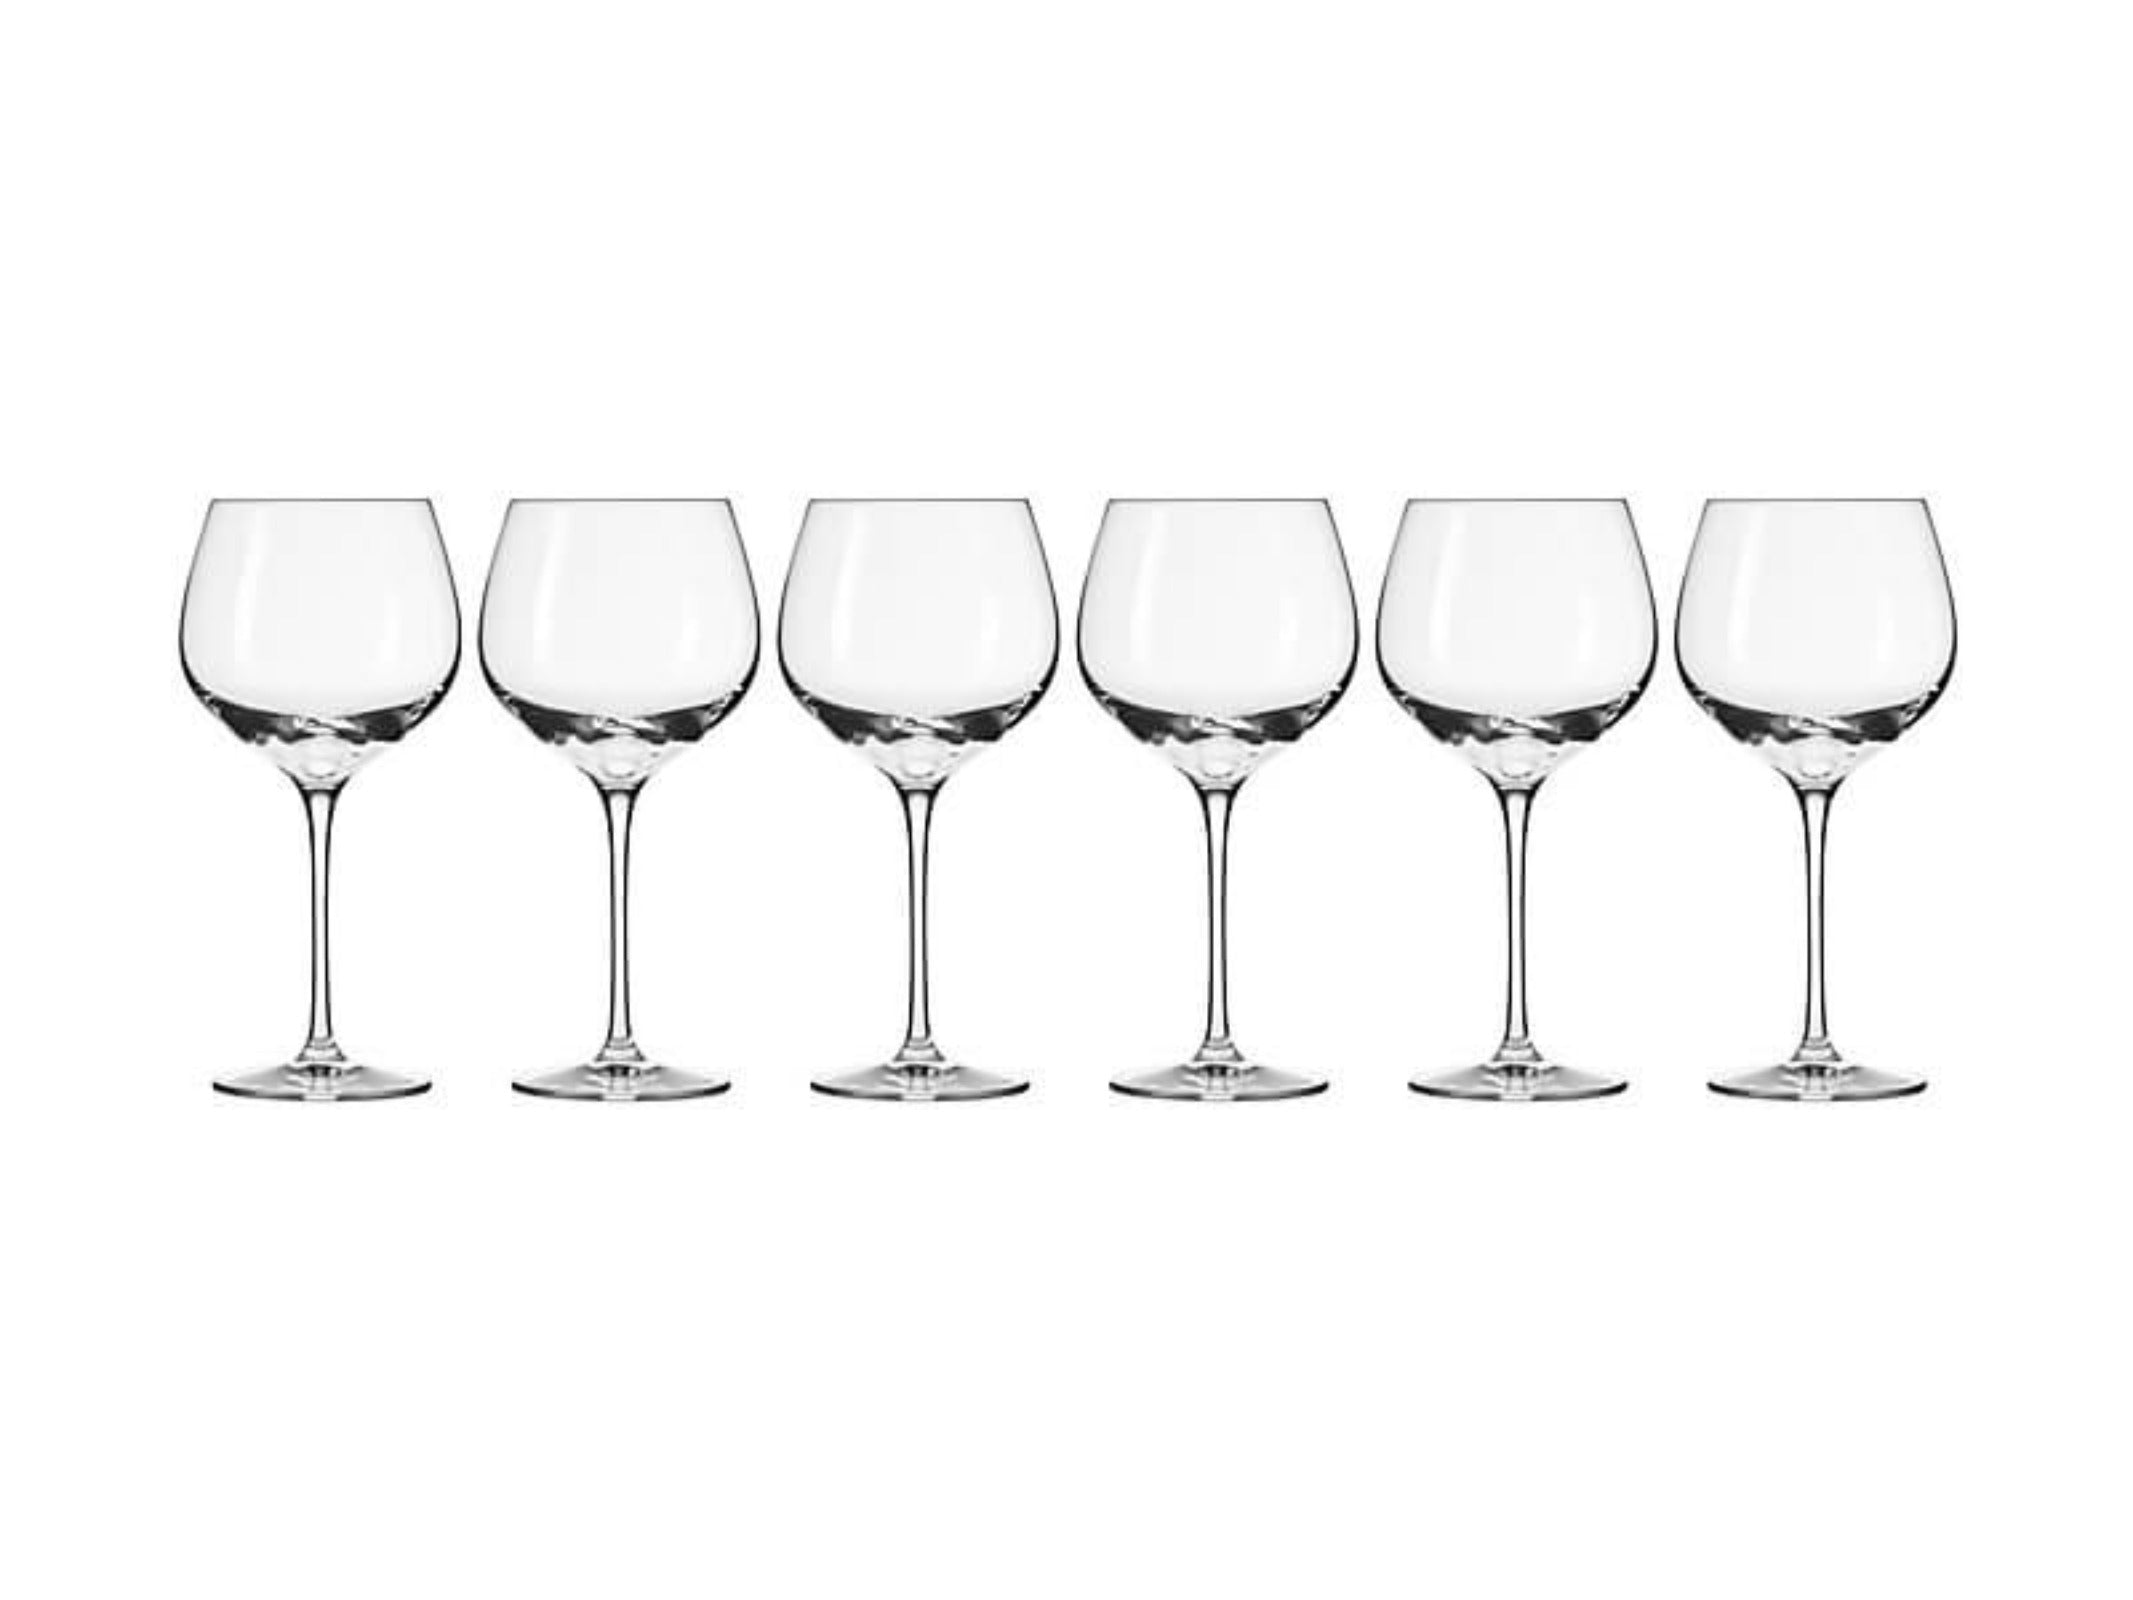 Krosno Harmony Wine Glasses 570ml 6pc